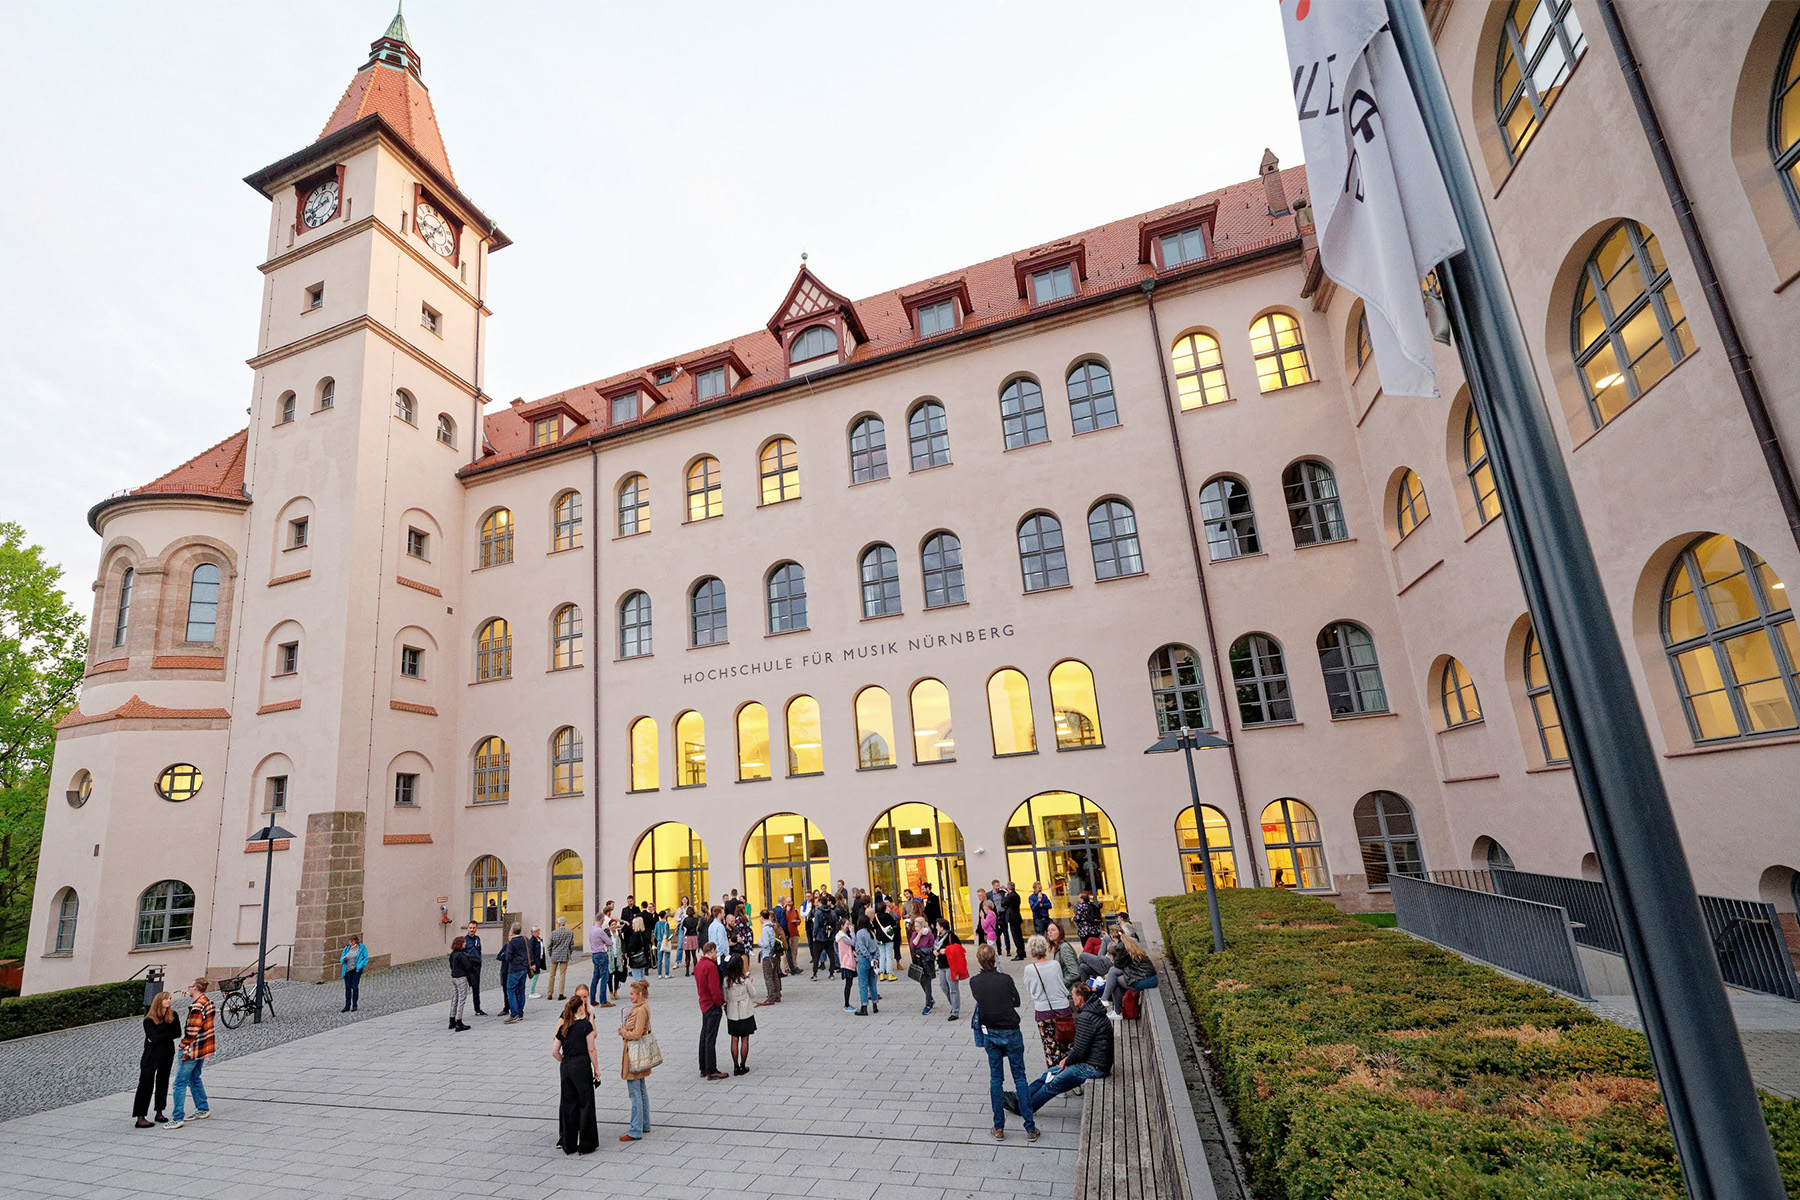 Hochschule für Musik Nürnberg